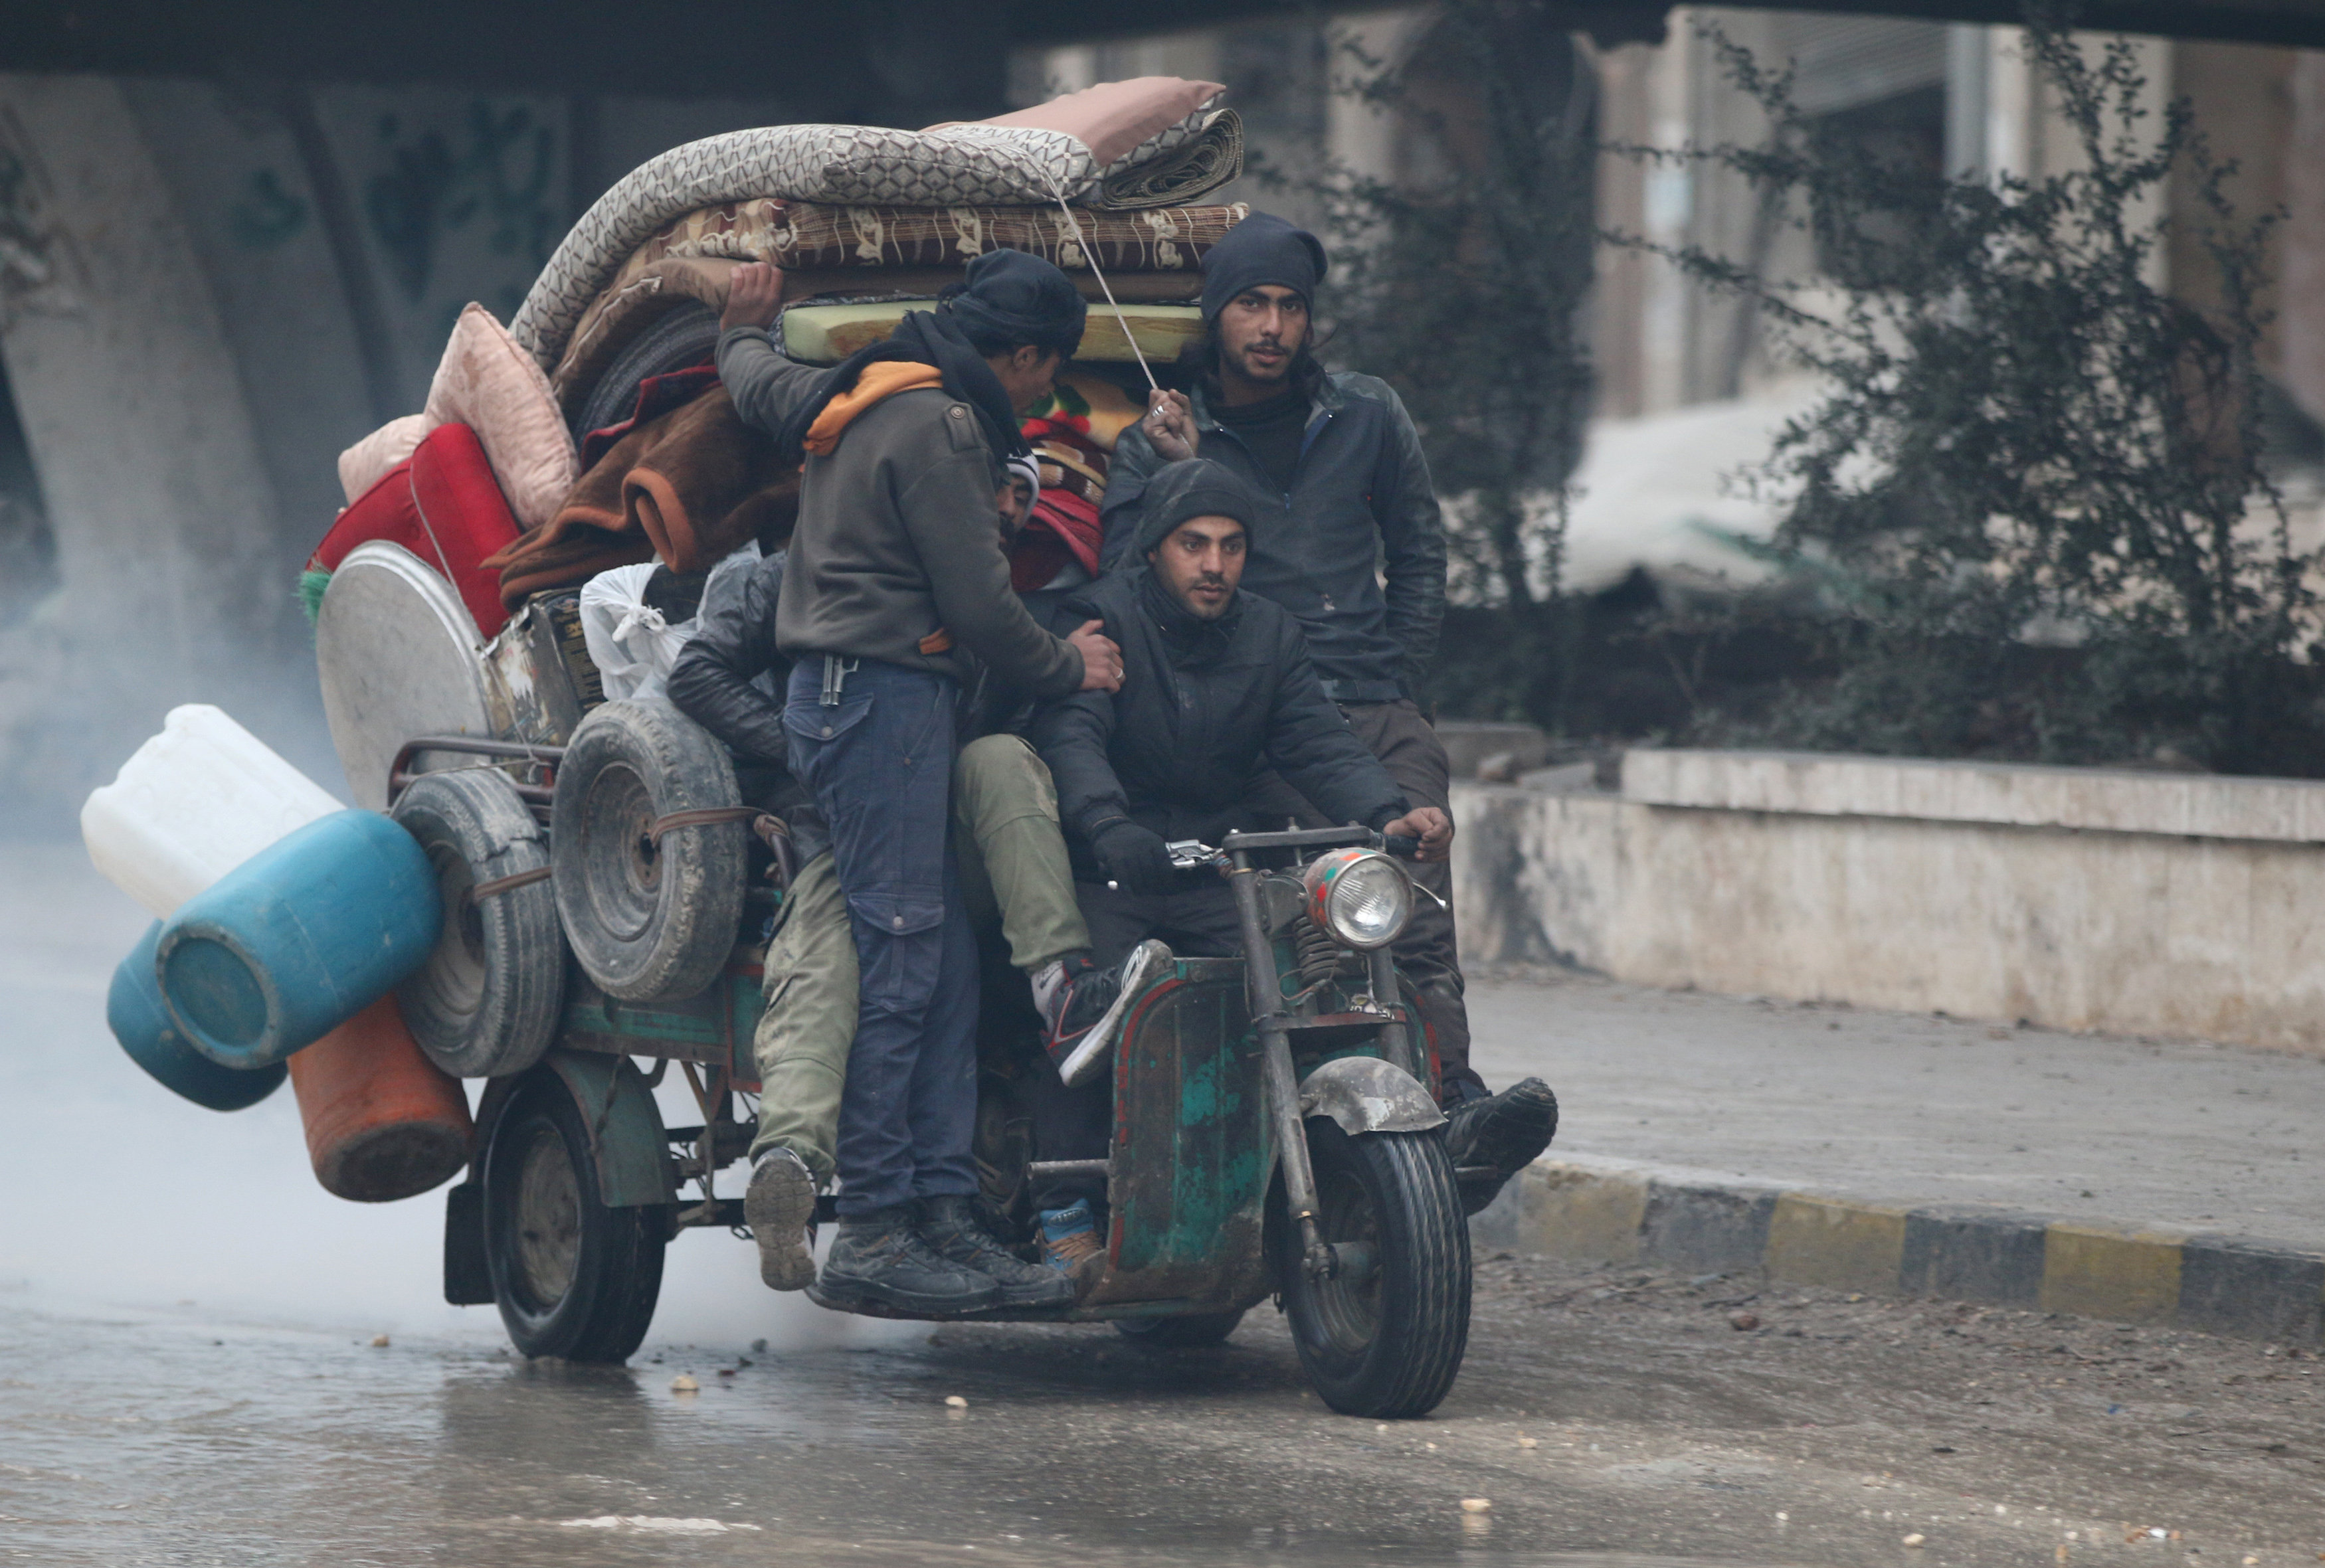 Το Χαλέπι επί ξυρού ακμής: Ο στρατός προελαύνει, οι αντάρτες ζητούν εκεχείρια